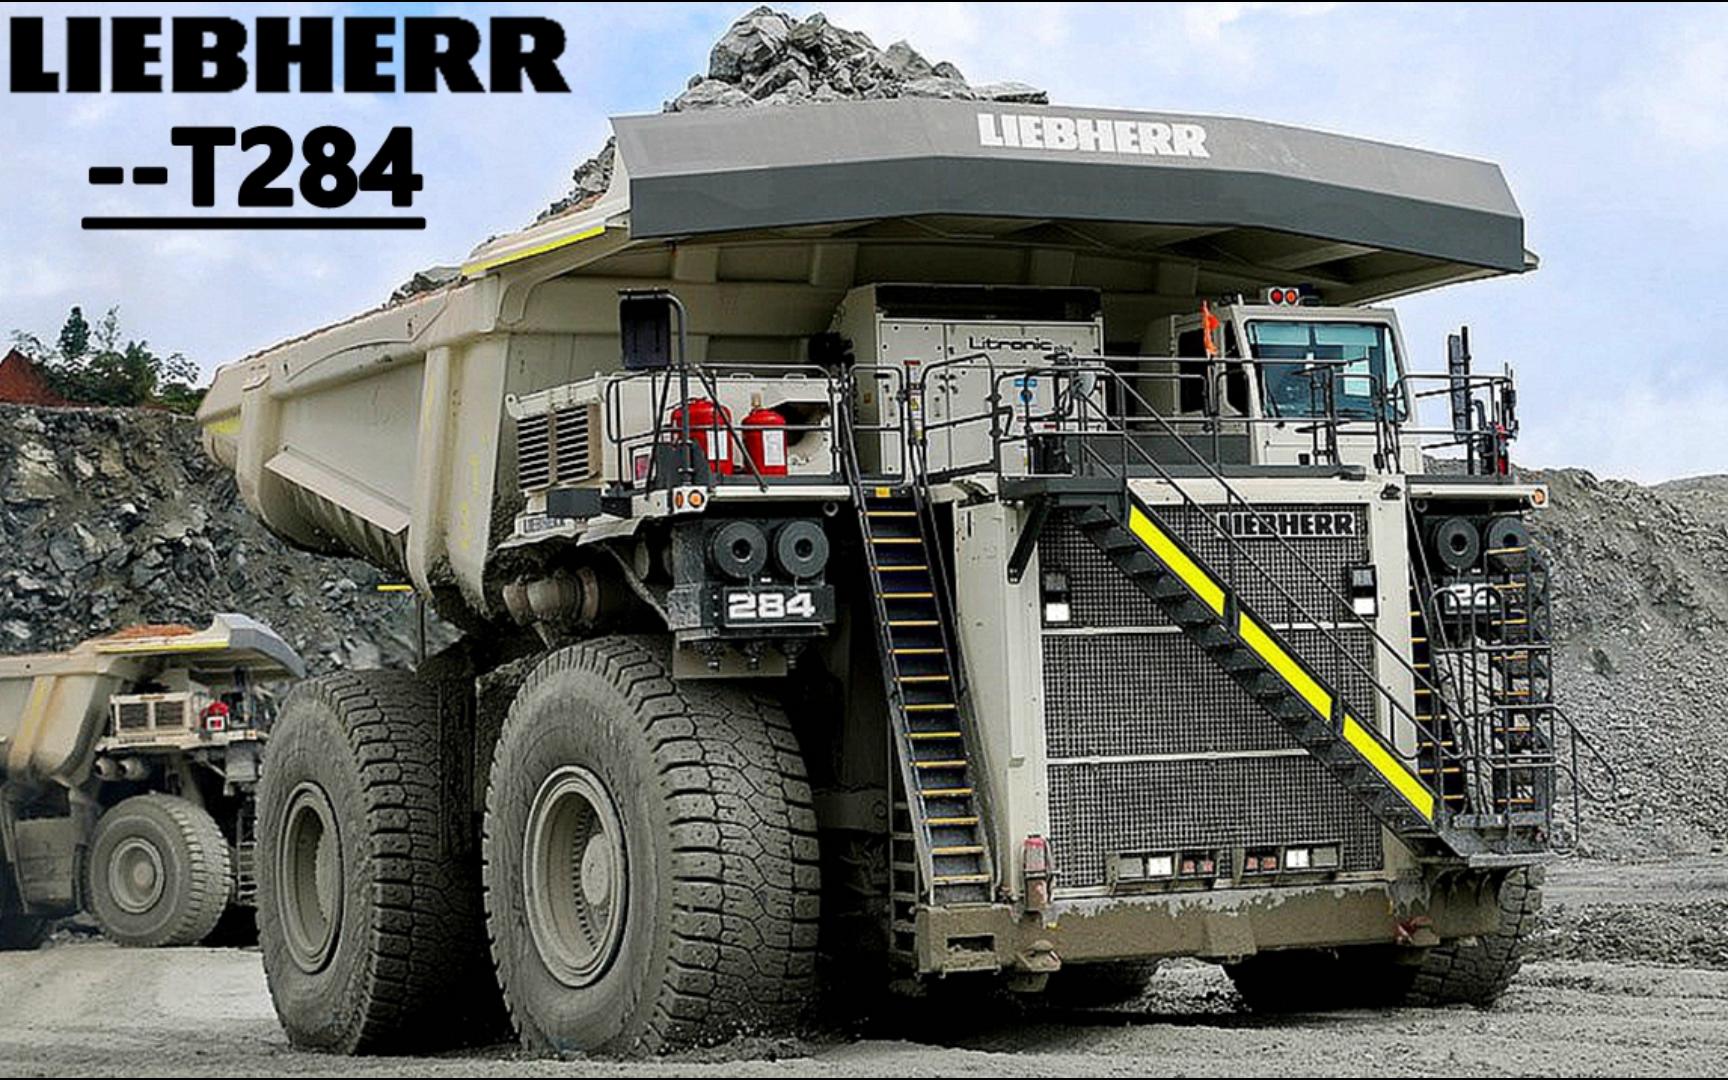 11精品):利勃海尔t284最大矿山型非公路自卸卡车详细性能参数介绍(含